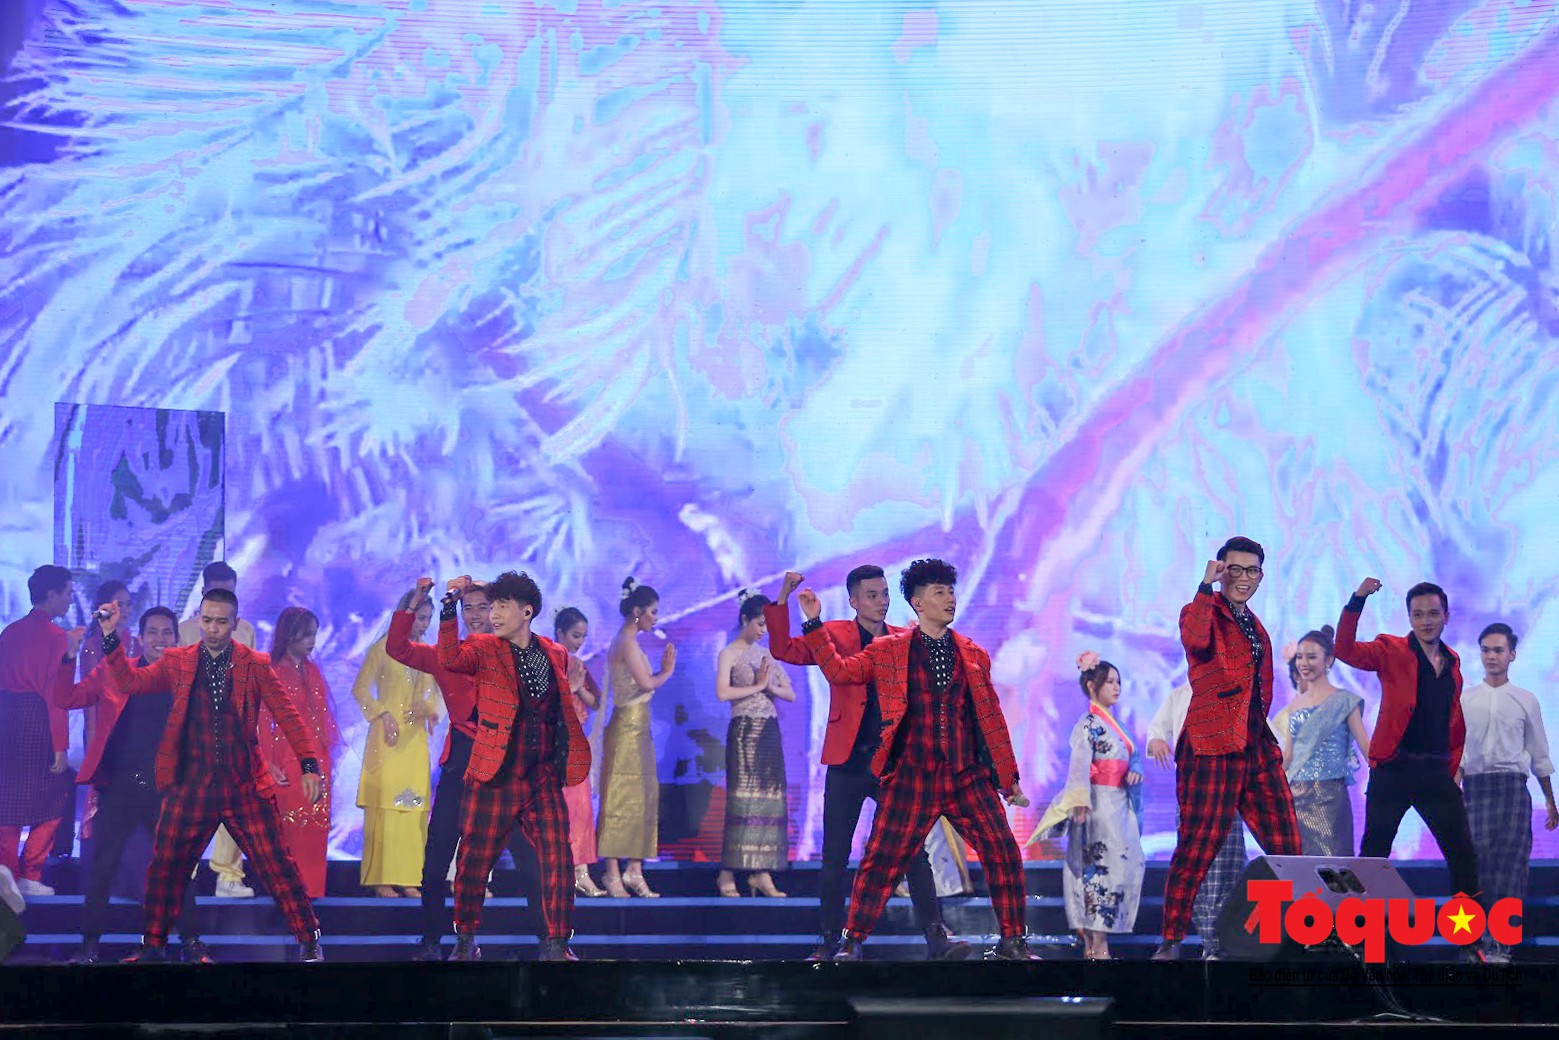 Đại nhạc hội ASEAN- Nhật Bản 2019: Nhiều nghệ sĩ cùng cất lên tiếng hát về ước nguyện hoà bình - Ảnh 14.